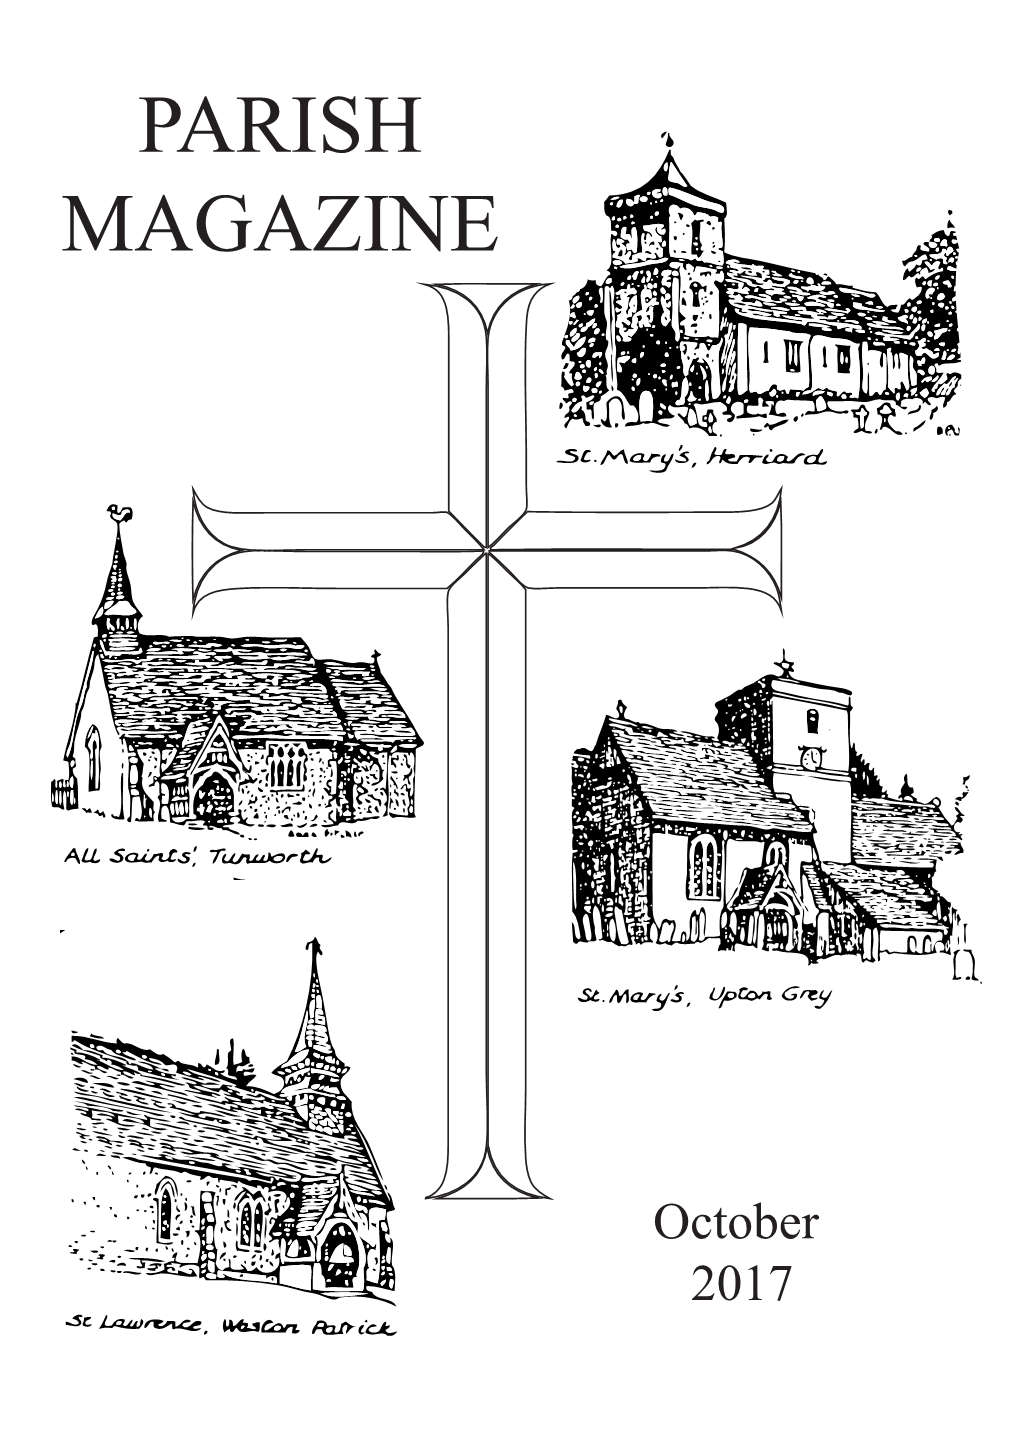 Parish Magazine October 2017